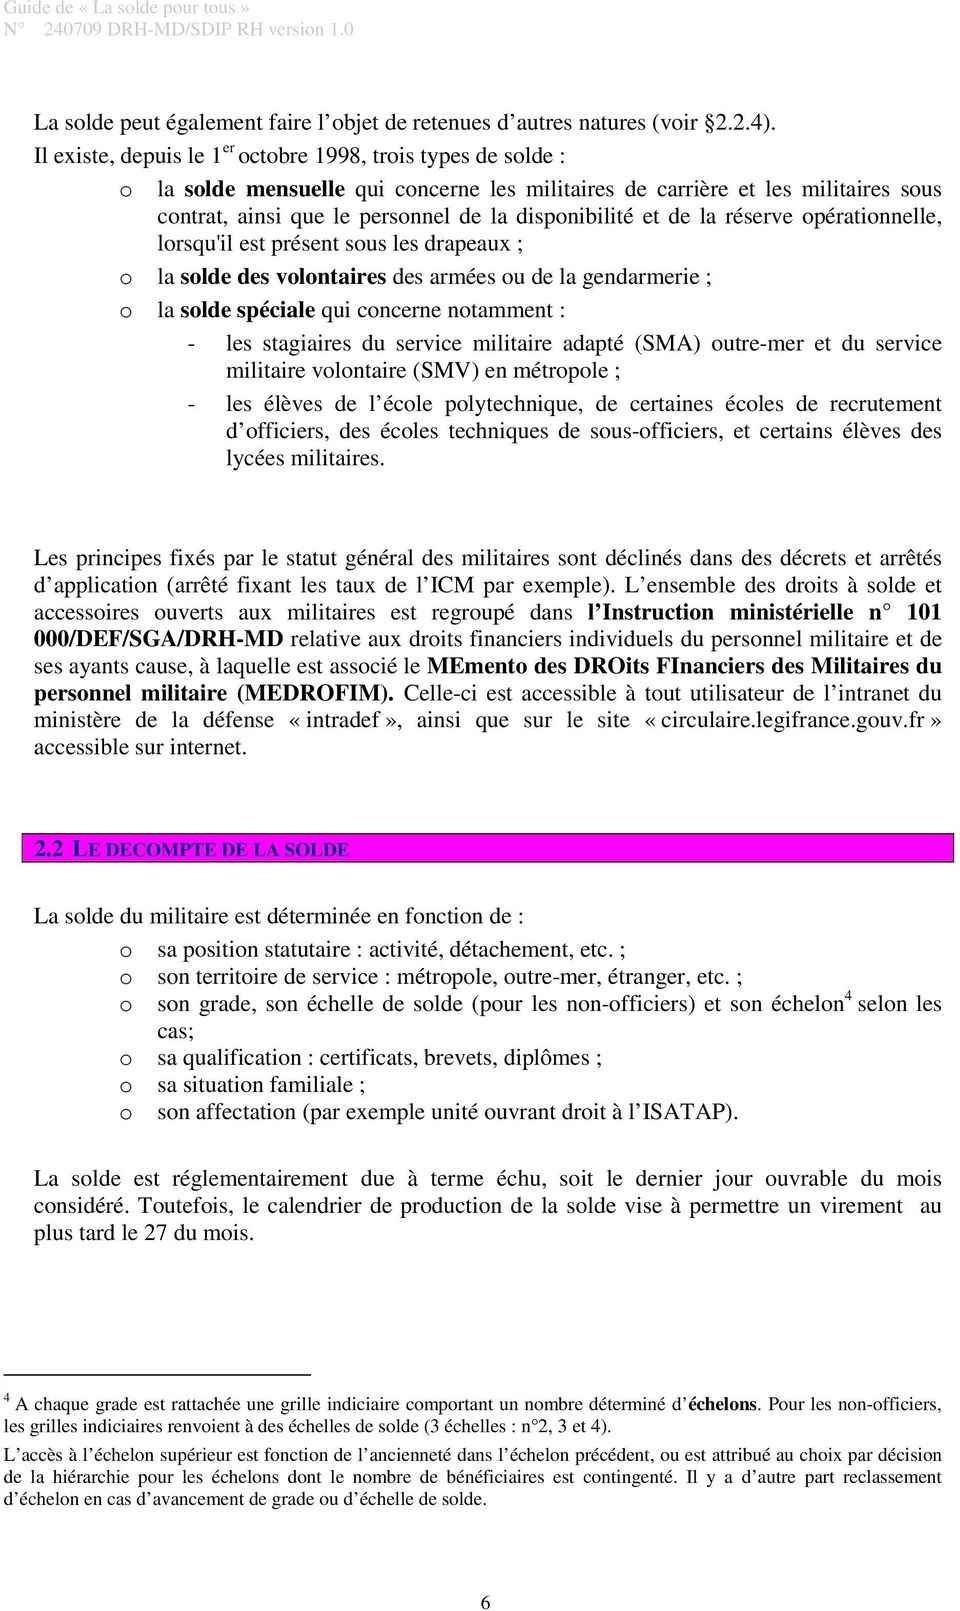 PDF Télécharger calcul solde militaire outre mer Gratuit PDF | PDFprof.com